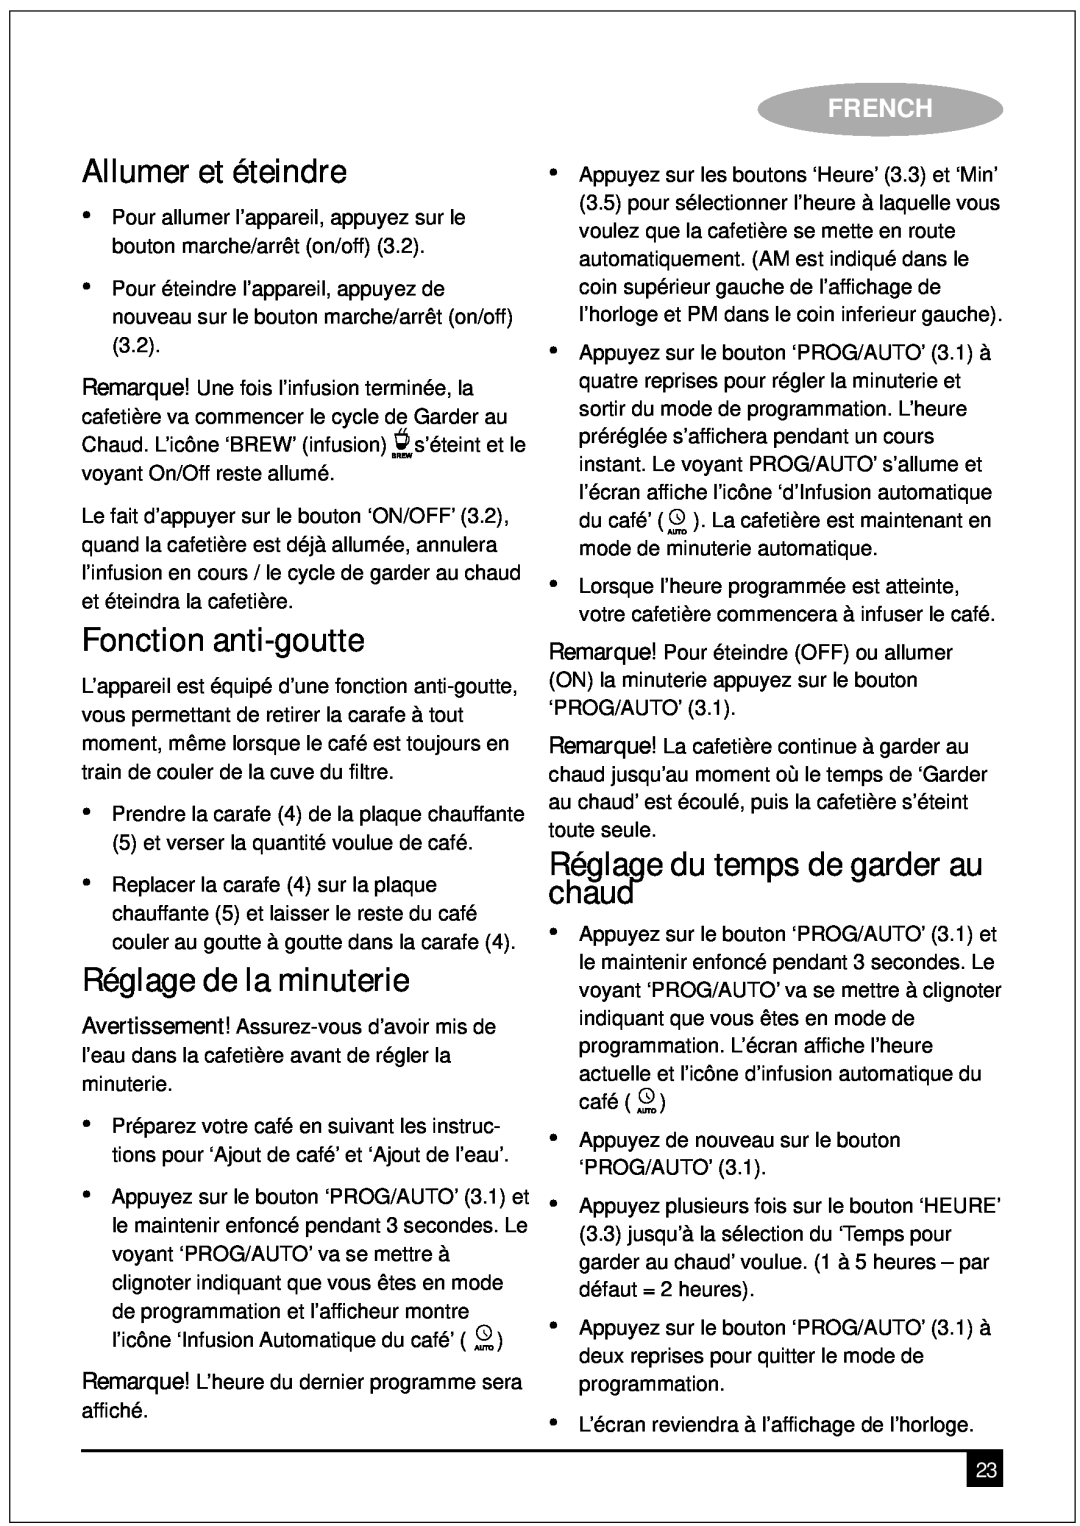 Black & Decker DCM90 manual Allumer et éteindre, Fonction anti-goutte, Réglage de la minuterie, French 